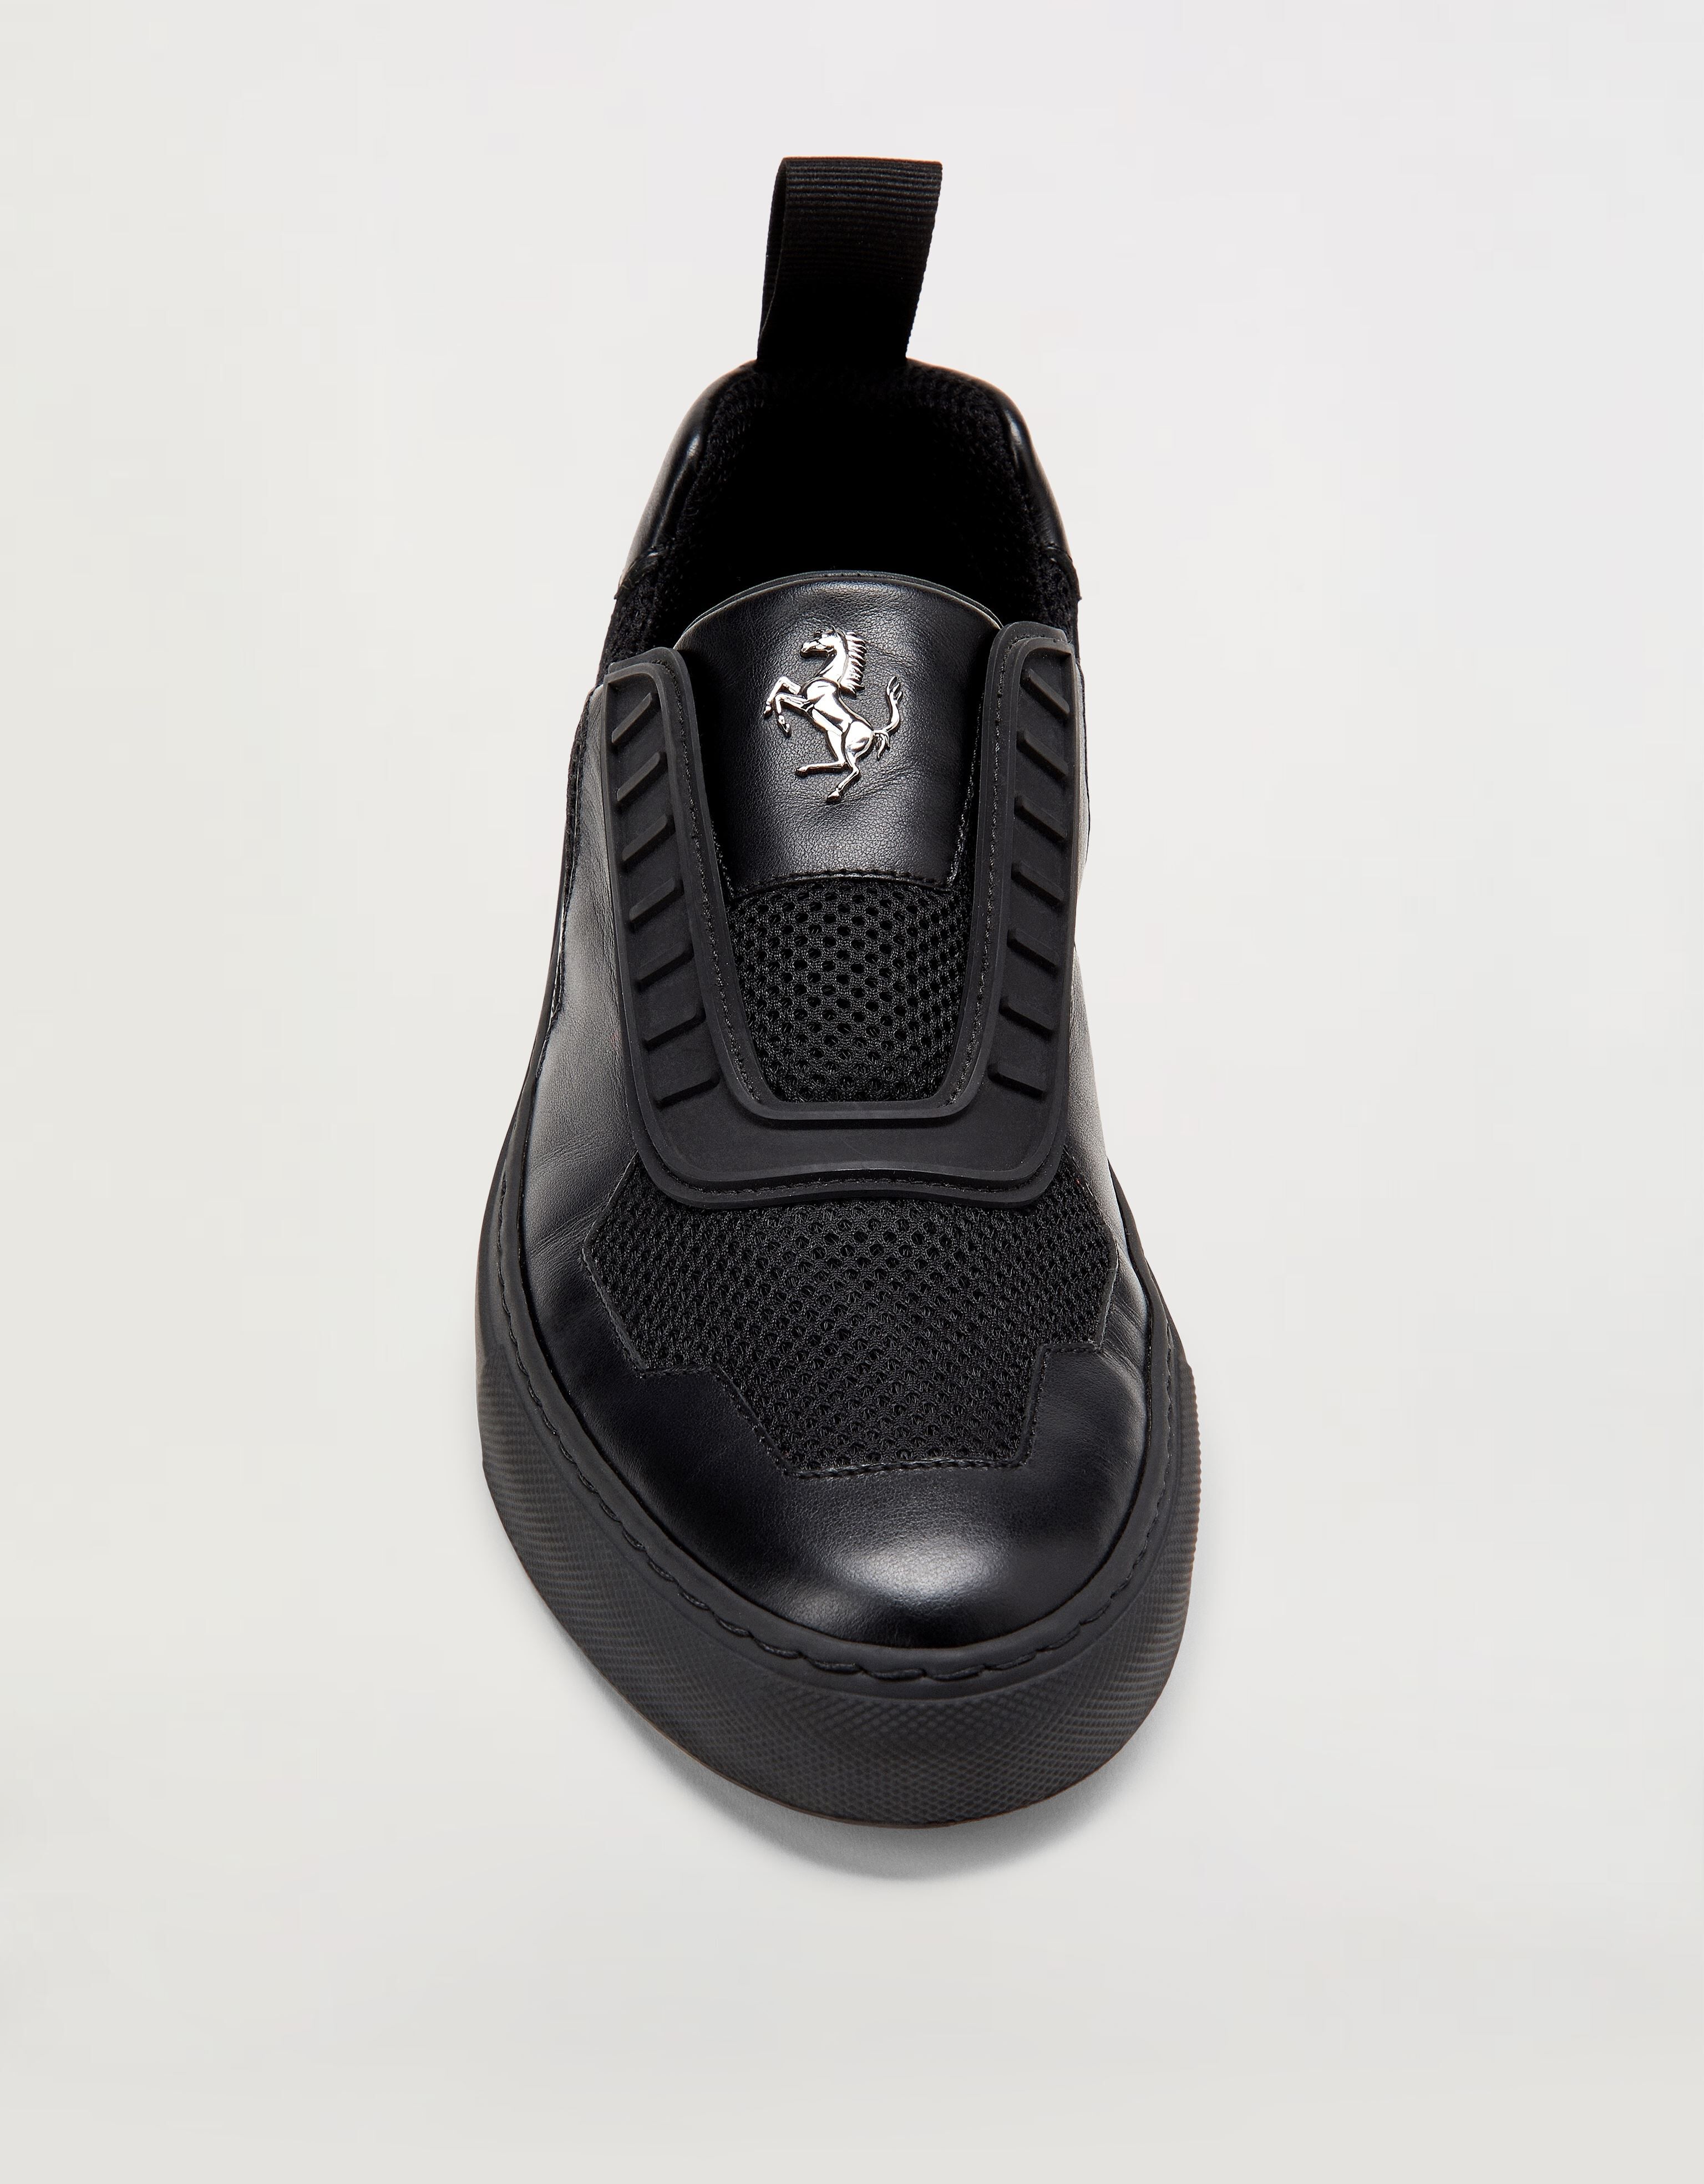 Ferrari Slip-on-Sneakers für Damen aus Leder mit „Cavallino Rampante“-Emblem Schwarz 47104f